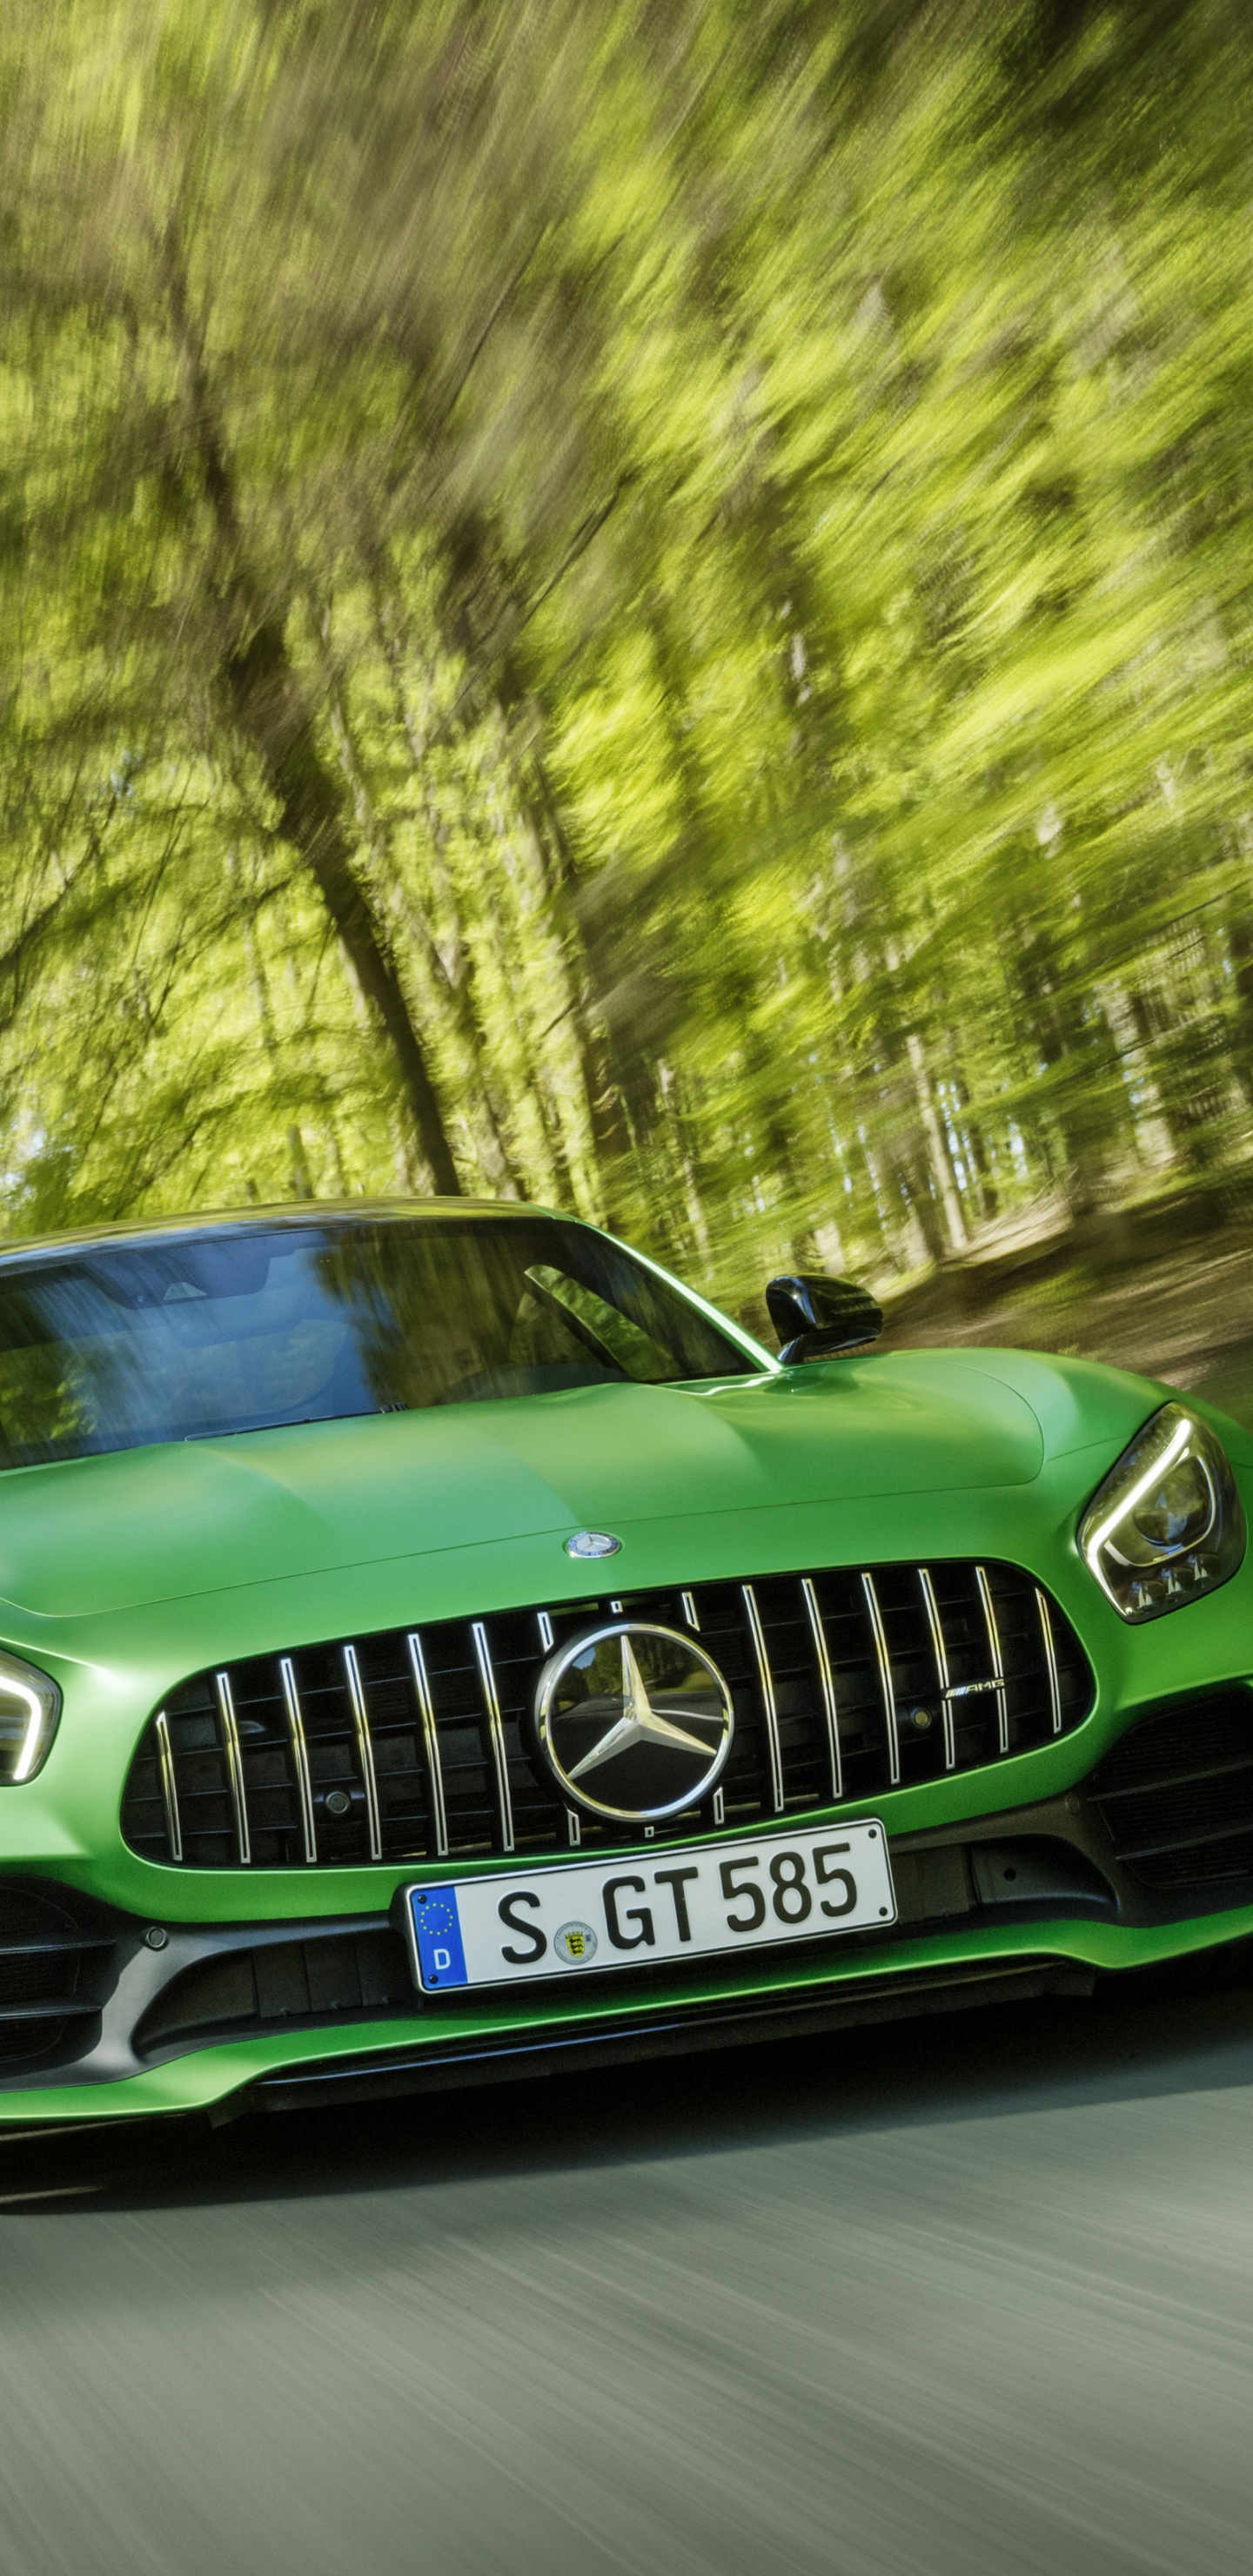 Grünes Mercedes Benz Auto Tagsüber Unterwegs. Wallpaper in 1440x2960 Resolution